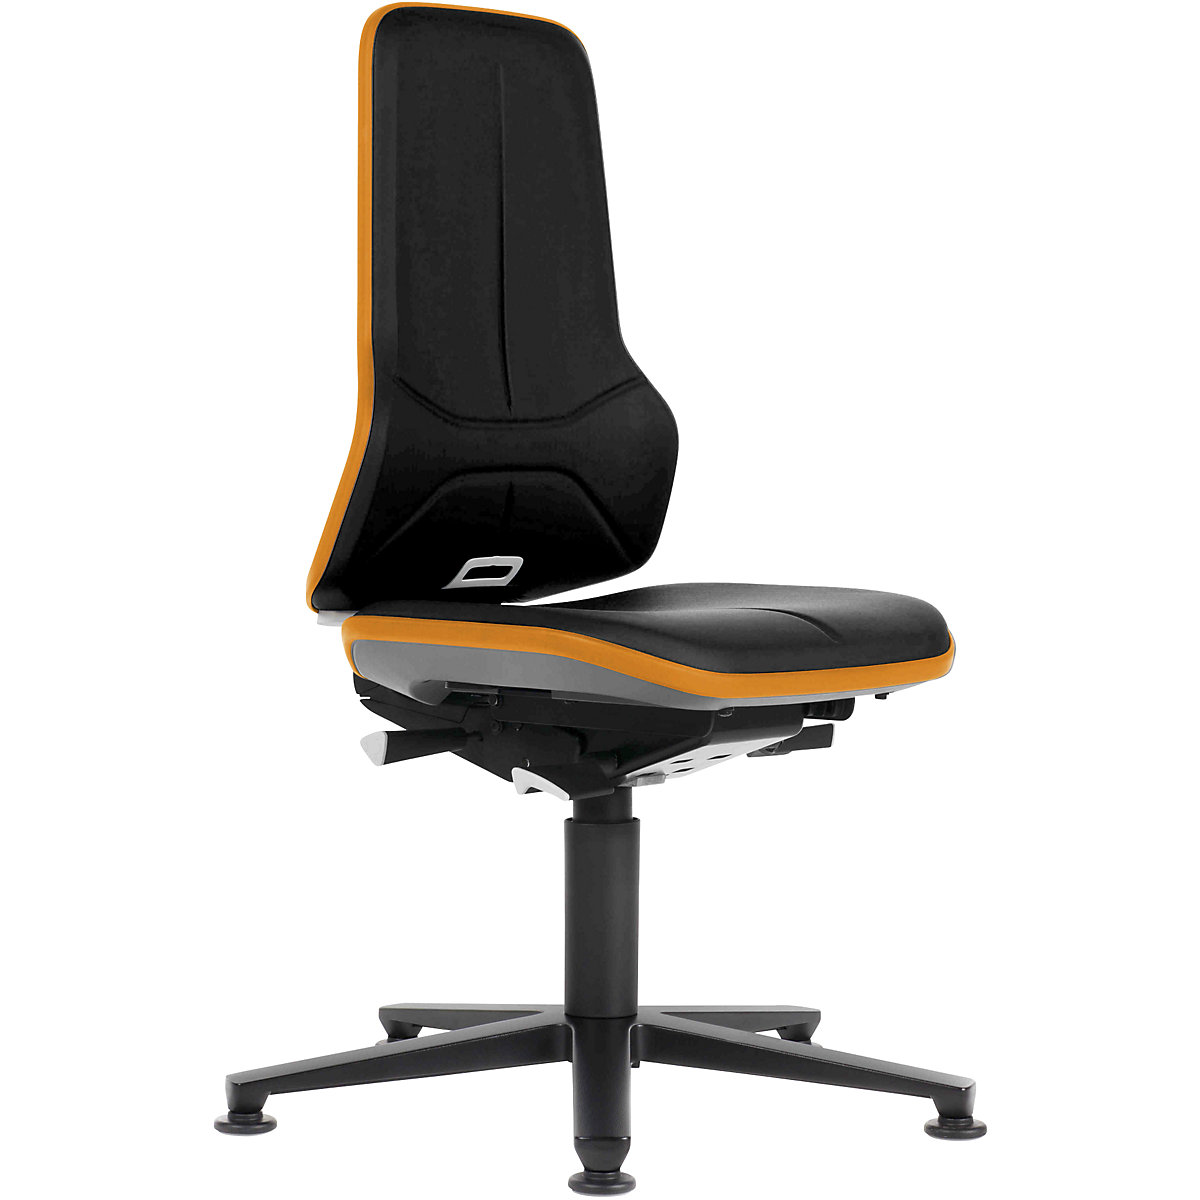 Pracovní otočná židle NEON, patky – bimos, permanentní kontakt, koženka, oranžový flexibilní pás-9